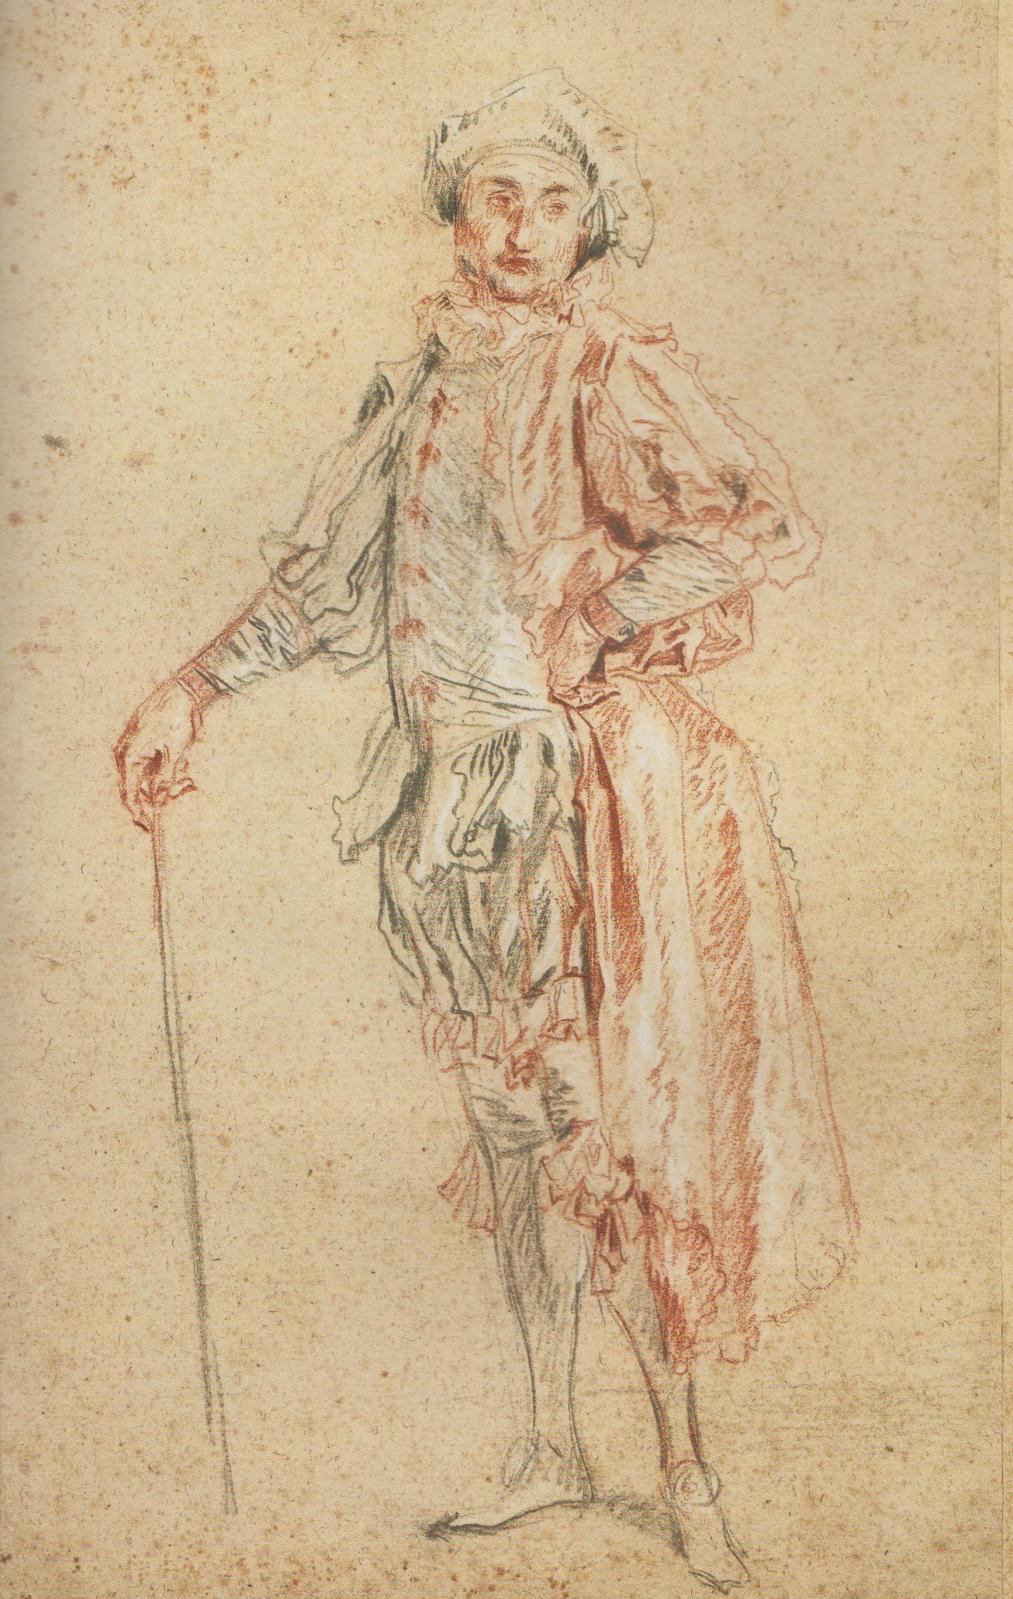 Jean-Antoine Watteau (1684-1721), Acteur debout, vers 1718, trois crayons avec touches de graphite sur papier vergé. © The Horvitz Collection © Photo 